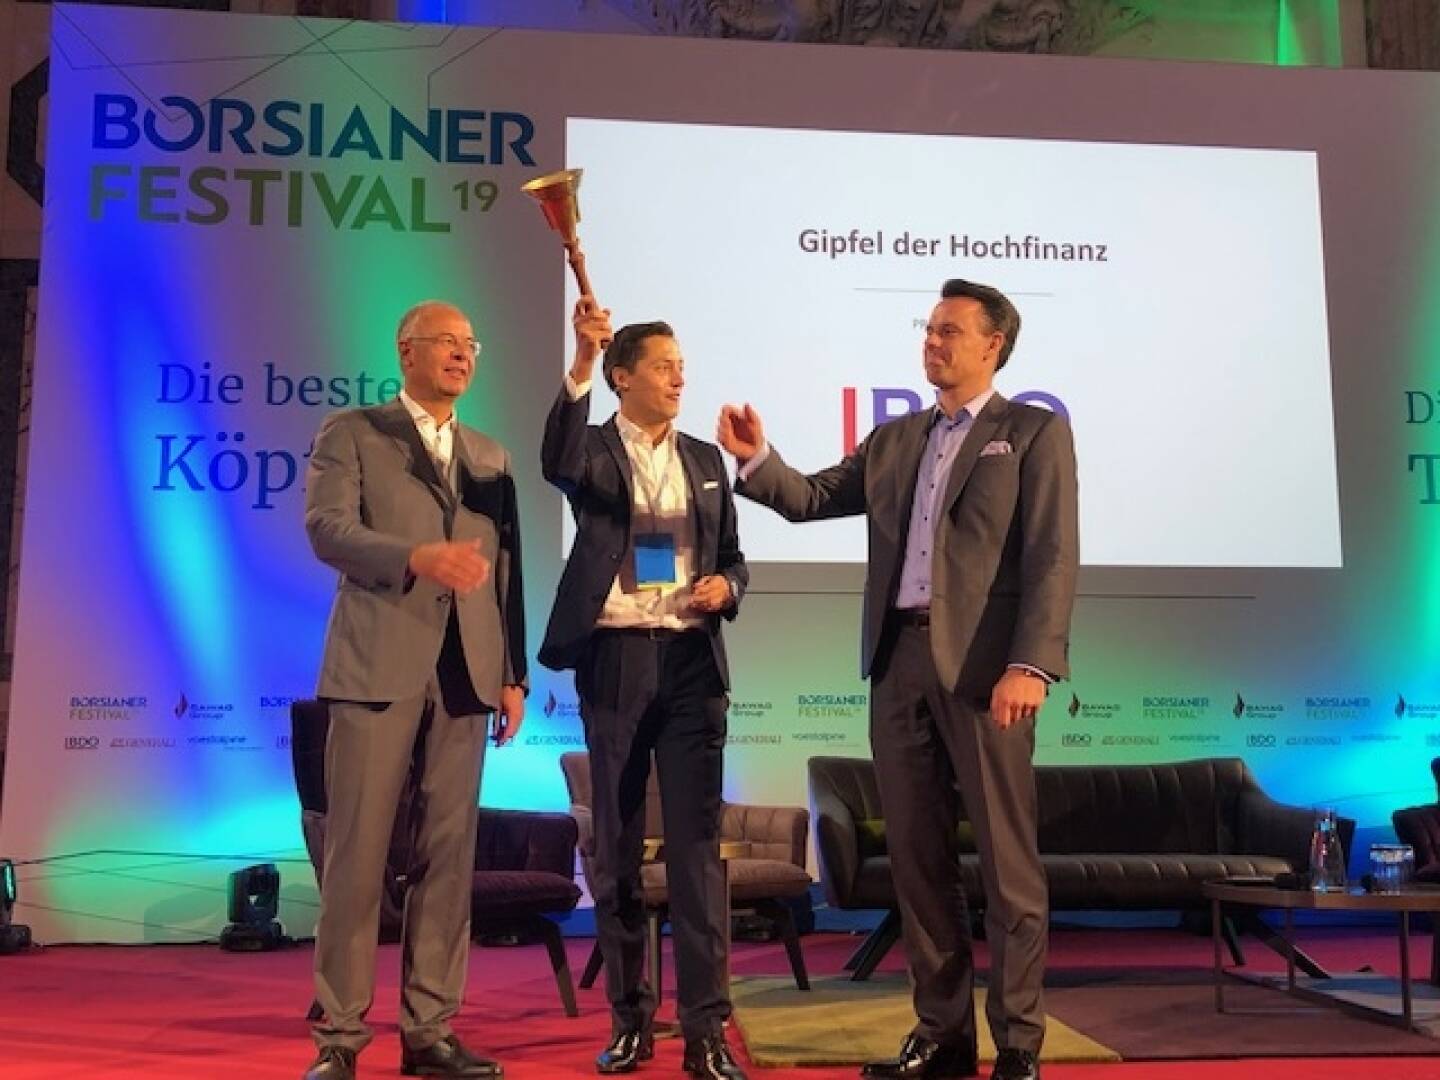 Eröffnung des Börsianer Festivals mit Wienerberger-Chef Heimo Scheuch, Börsianer Dominik Hojas, Börse-CEO Christoph Boschan